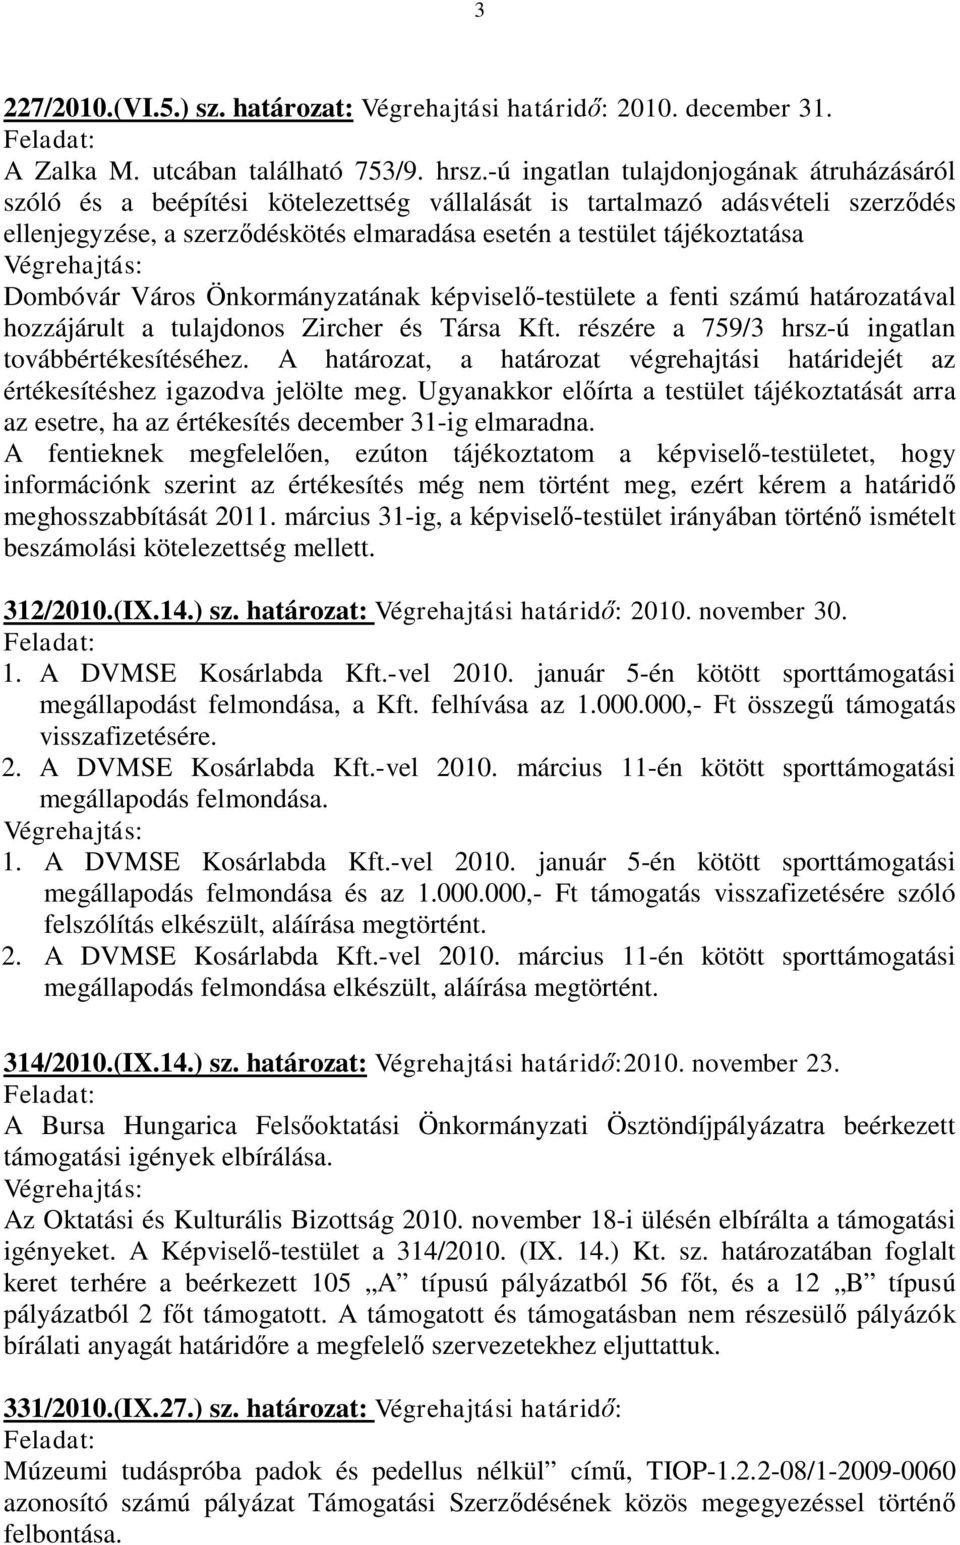 Dombóvár Város Önkormányzatának képviselő-testülete a fenti számú határozatával hozzájárult a tulajdonos Zircher és Társa Kft. részére a 759/3 hrsz-ú ingatlan továbbértékesítéséhez.